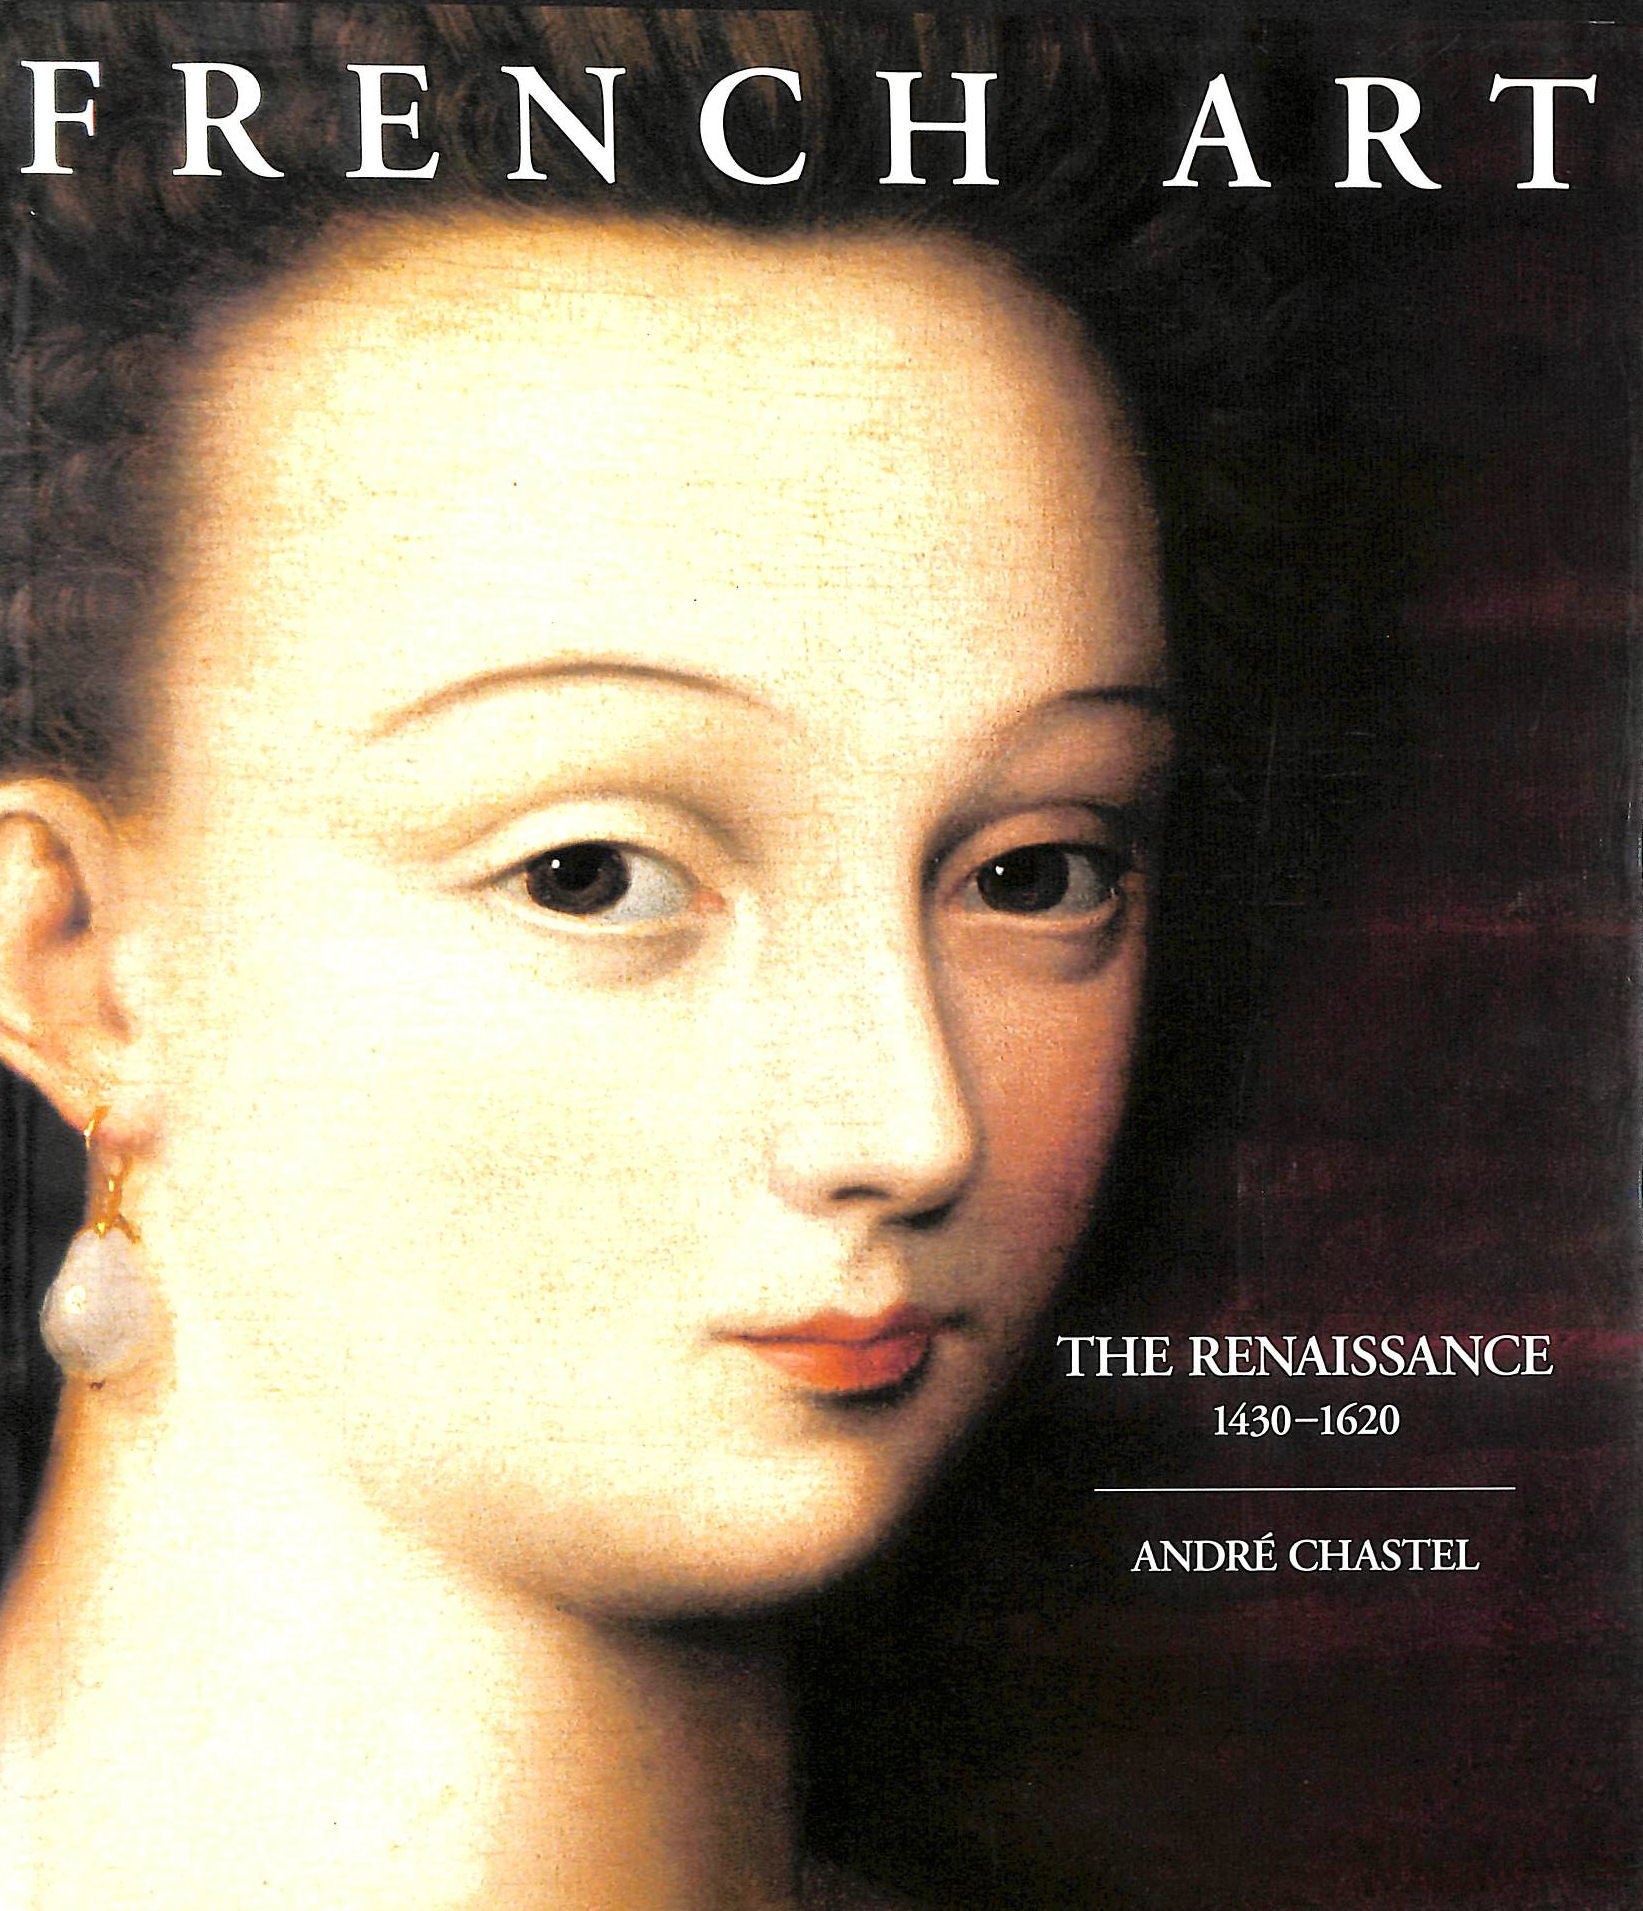 CHASTEL, ANDRE; DUSINBERRE, DEKE [TRANSLATOR] - The Renaissance, 1430-1620 (French Art)